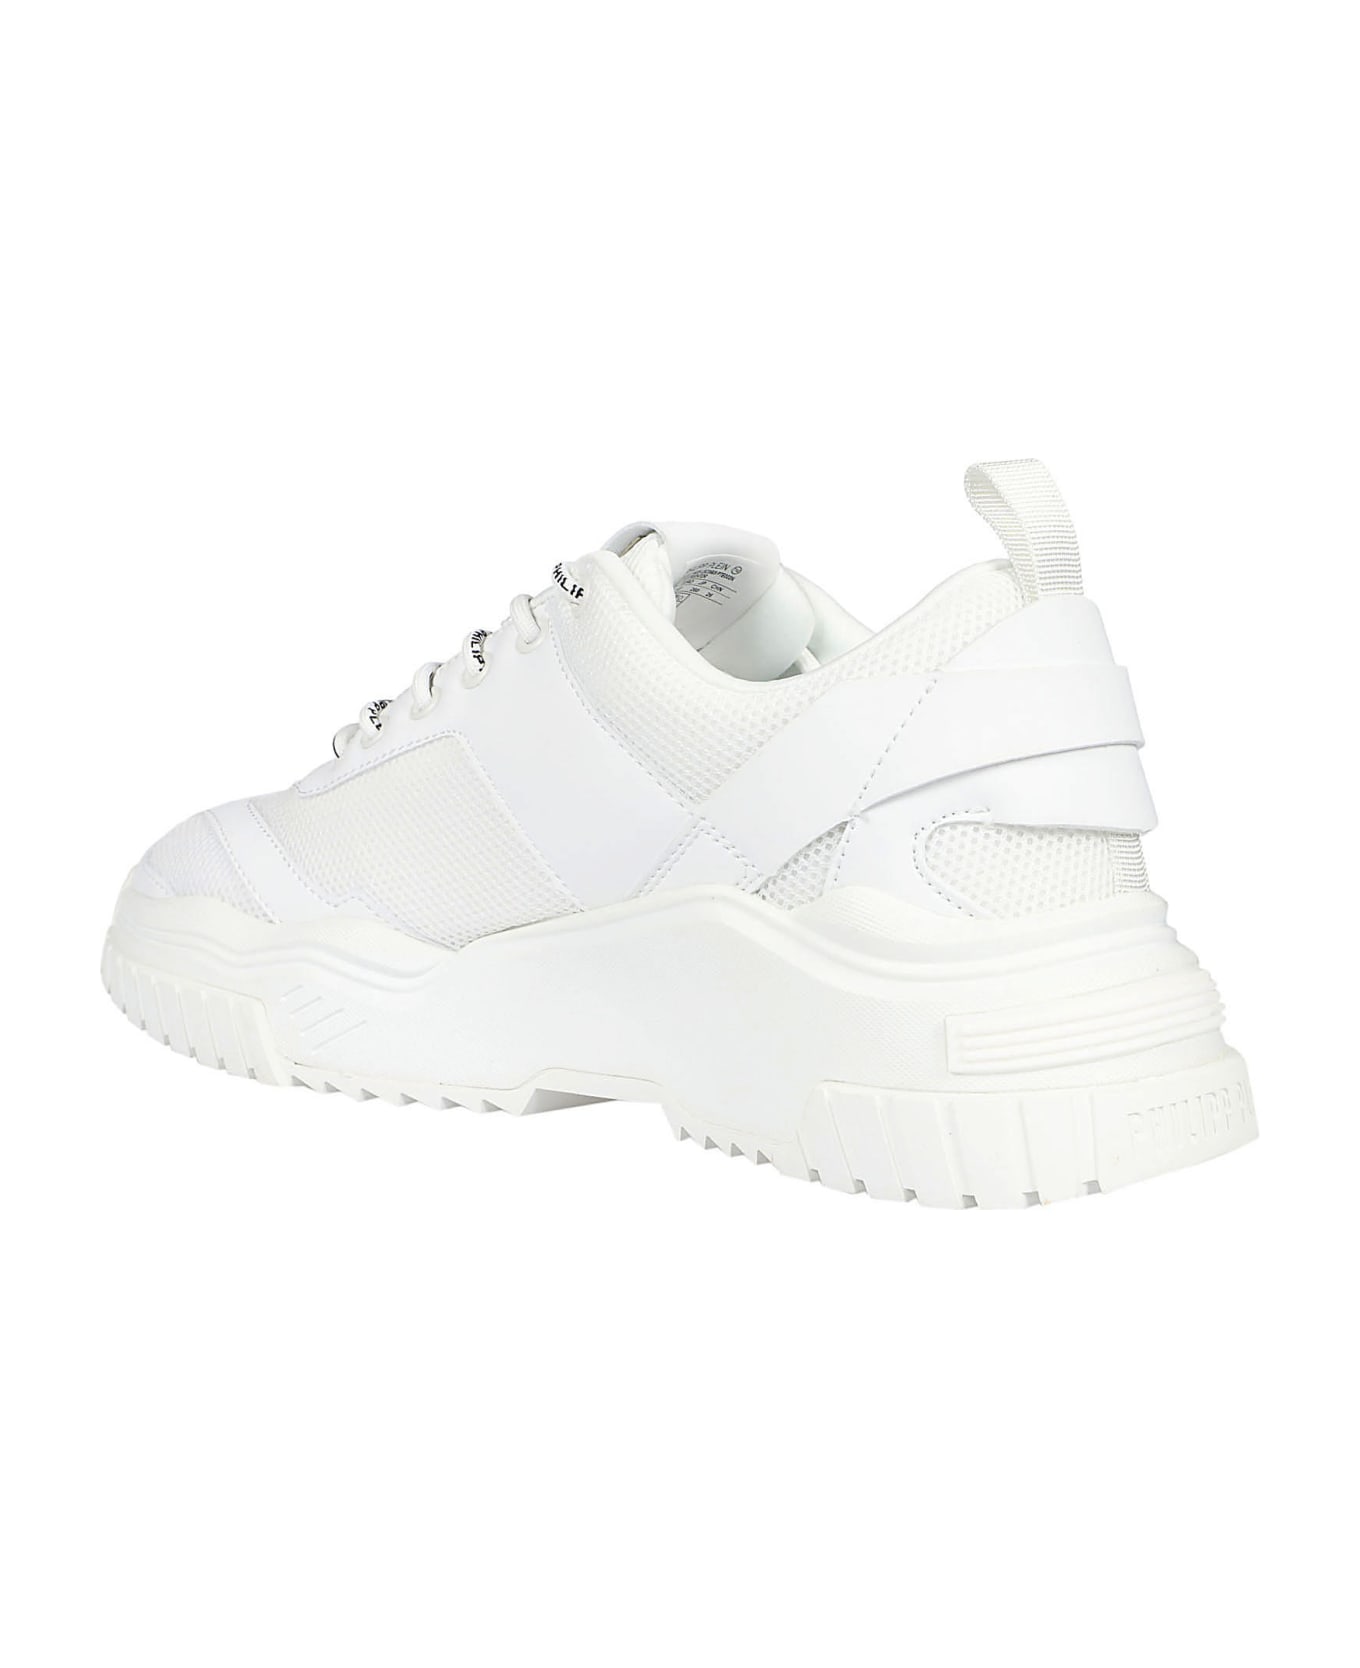 Philipp Plein Predator Sneakers - White/white